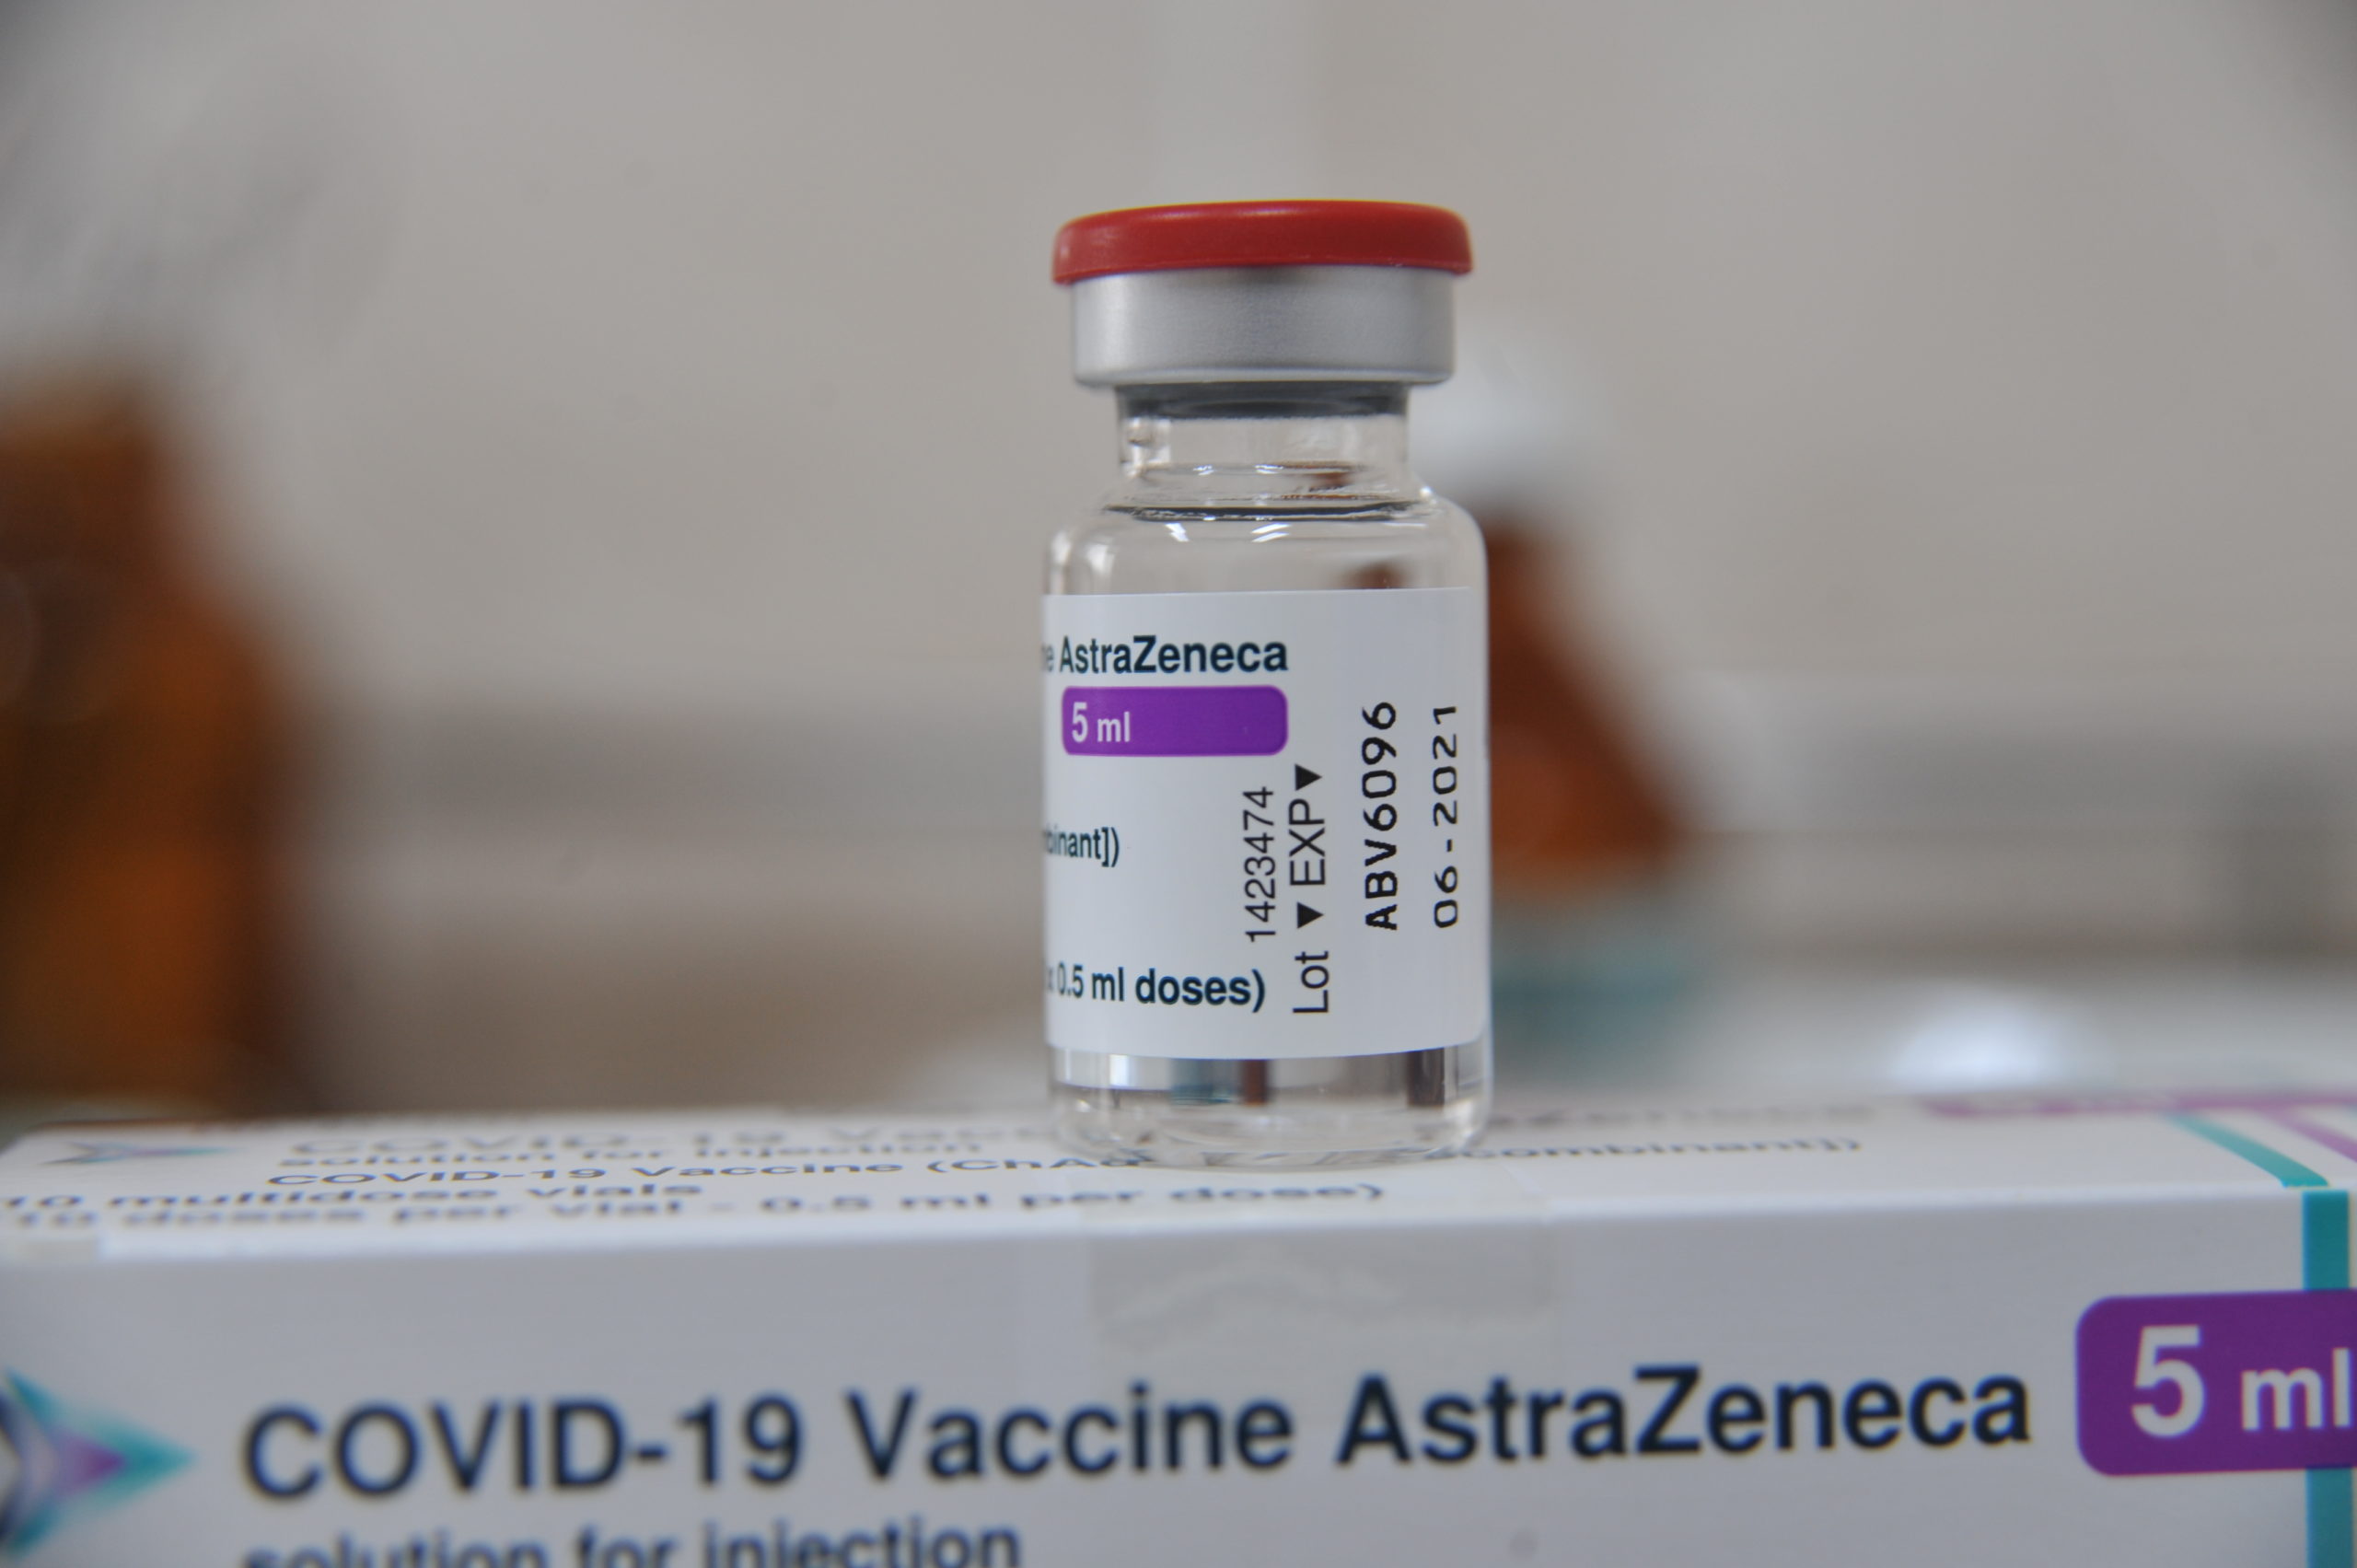 Rusia ar fi furat formula vaccinului AstraZeneca și a folosit-o pentru a dezvolta Sputnik V